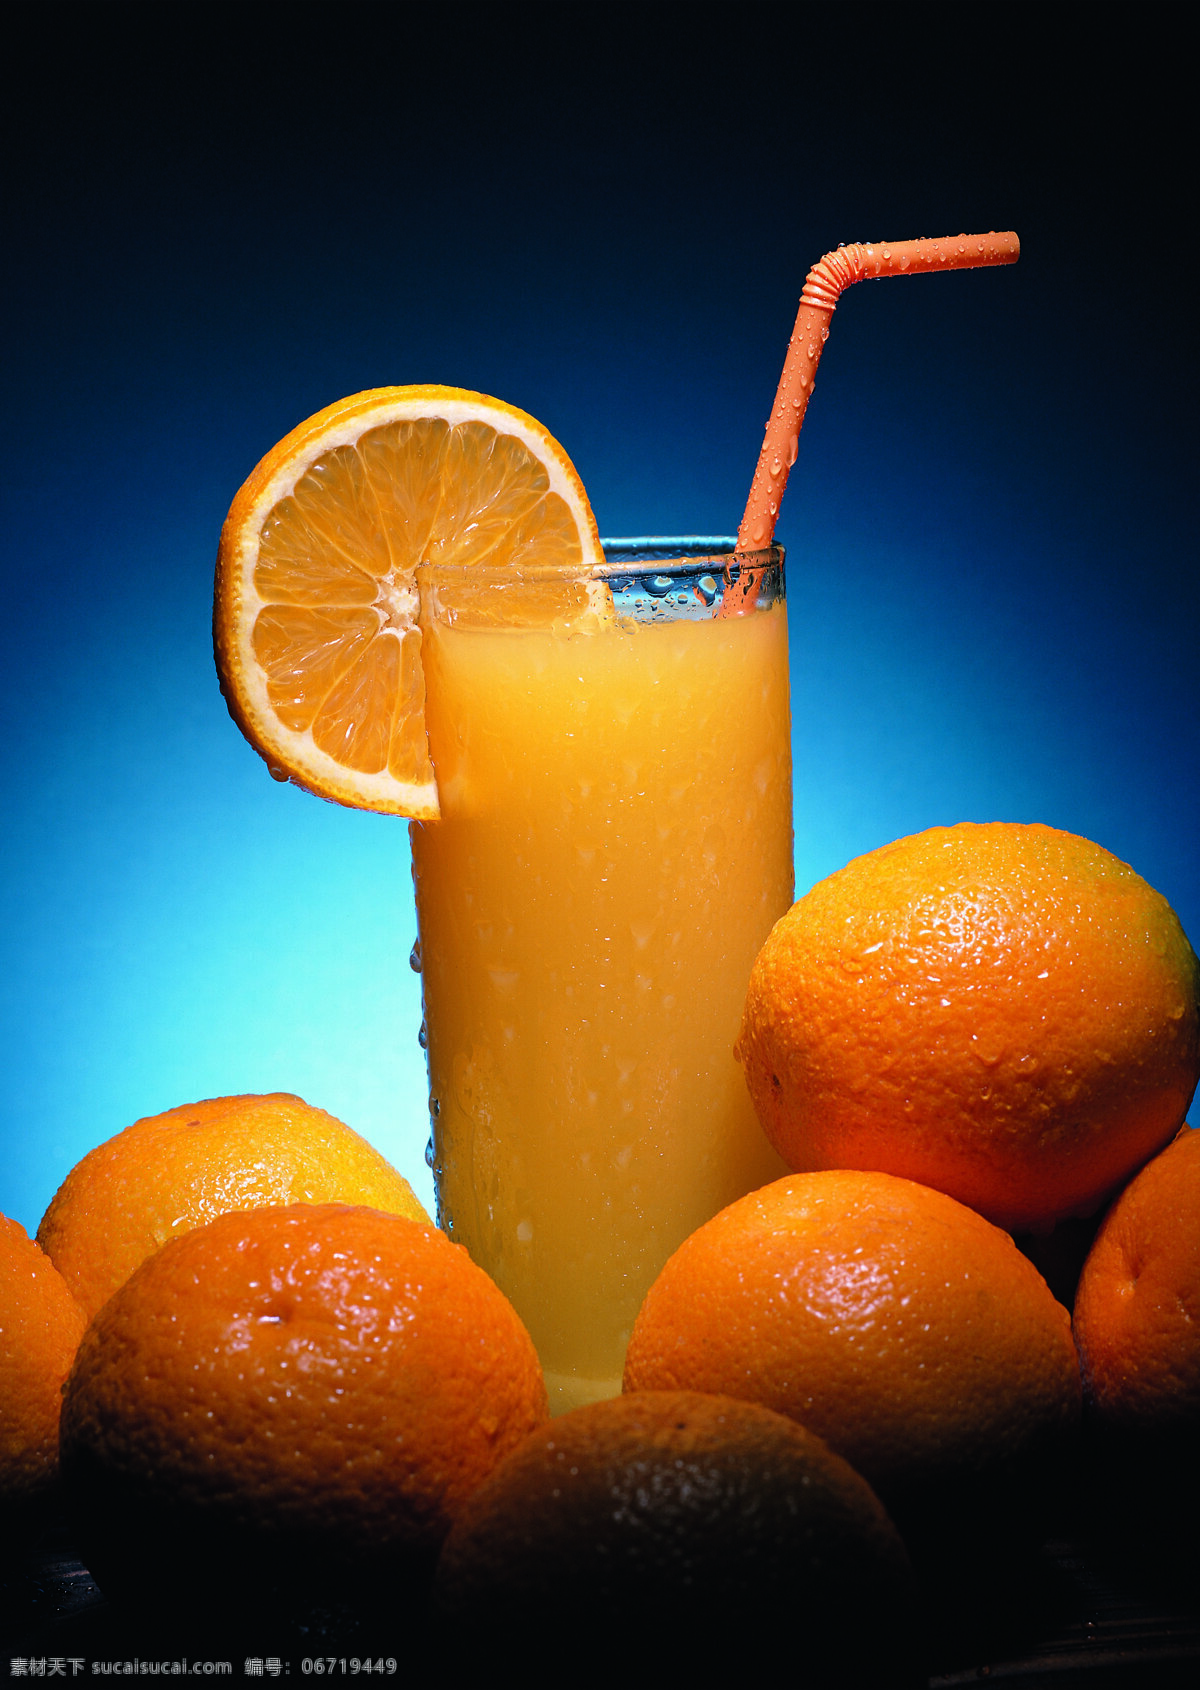 一杯 果汁 很多 橙子 饮料 水 吸管 喝饮料 杯子 玻璃杯 桌子 很多橙子 高清图片 酒类图片 餐饮美食